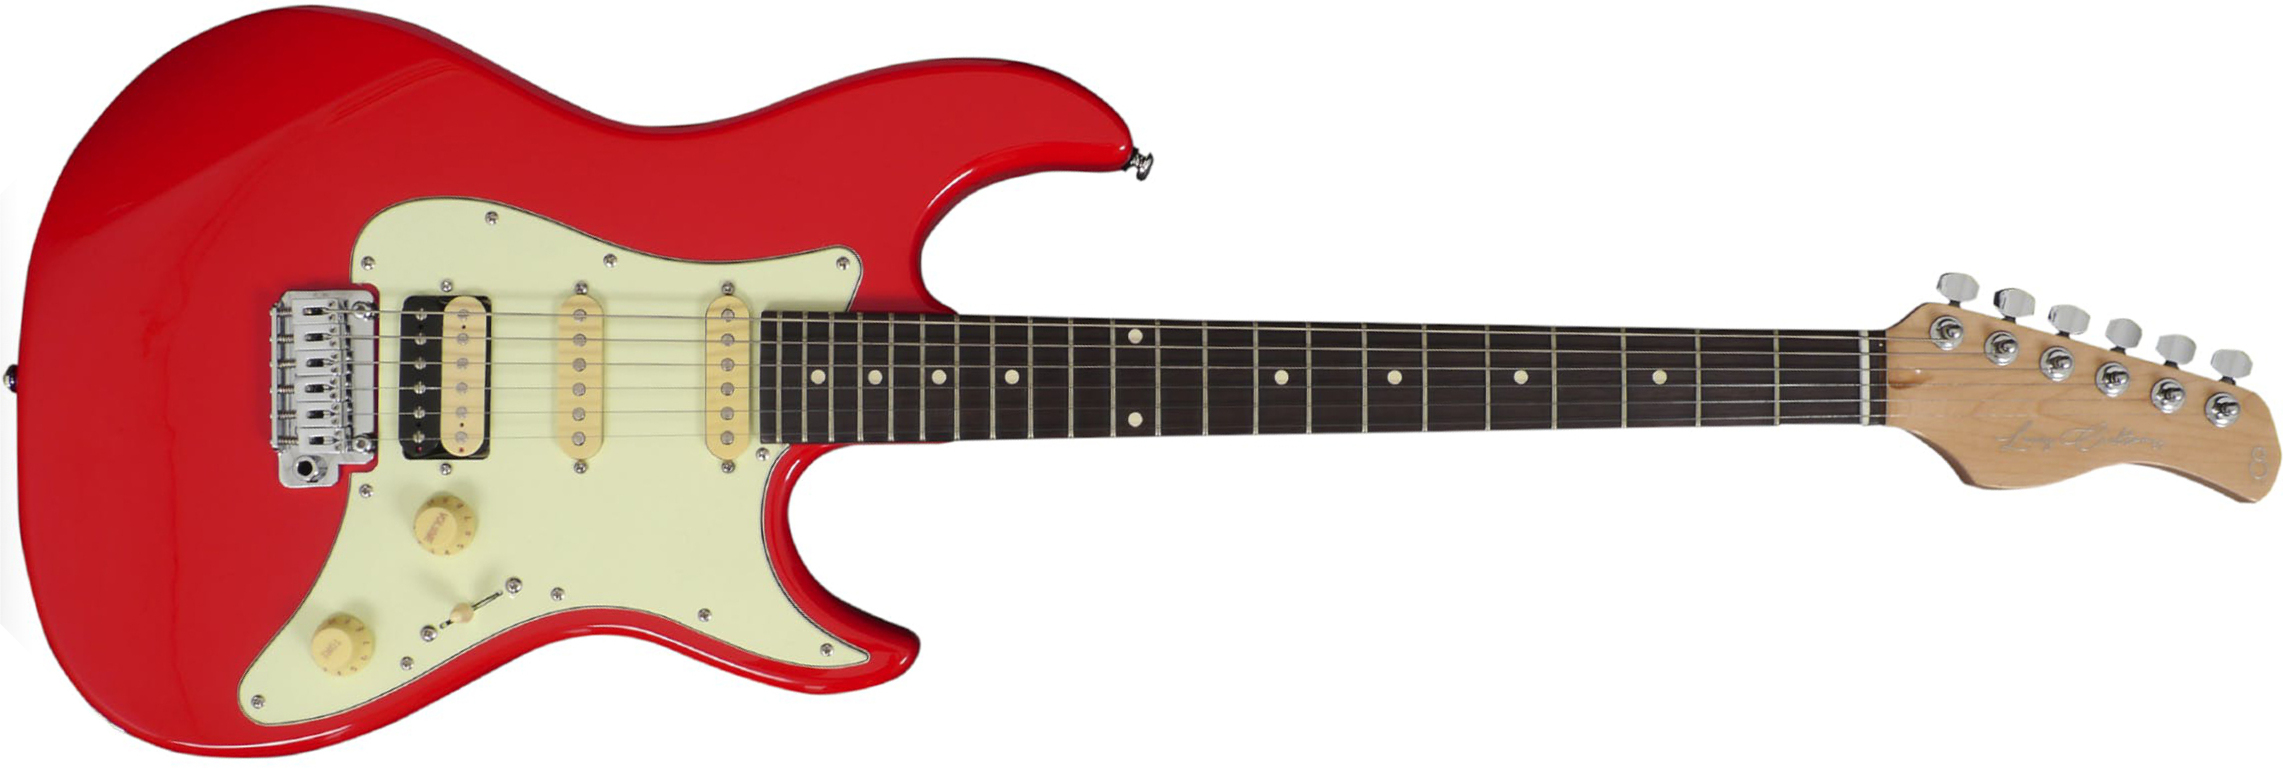 Sire Larry Carlton S3 Signature Hss Trem Rw - Dakota Red - Elektrische gitaar in Str-vorm - Main picture